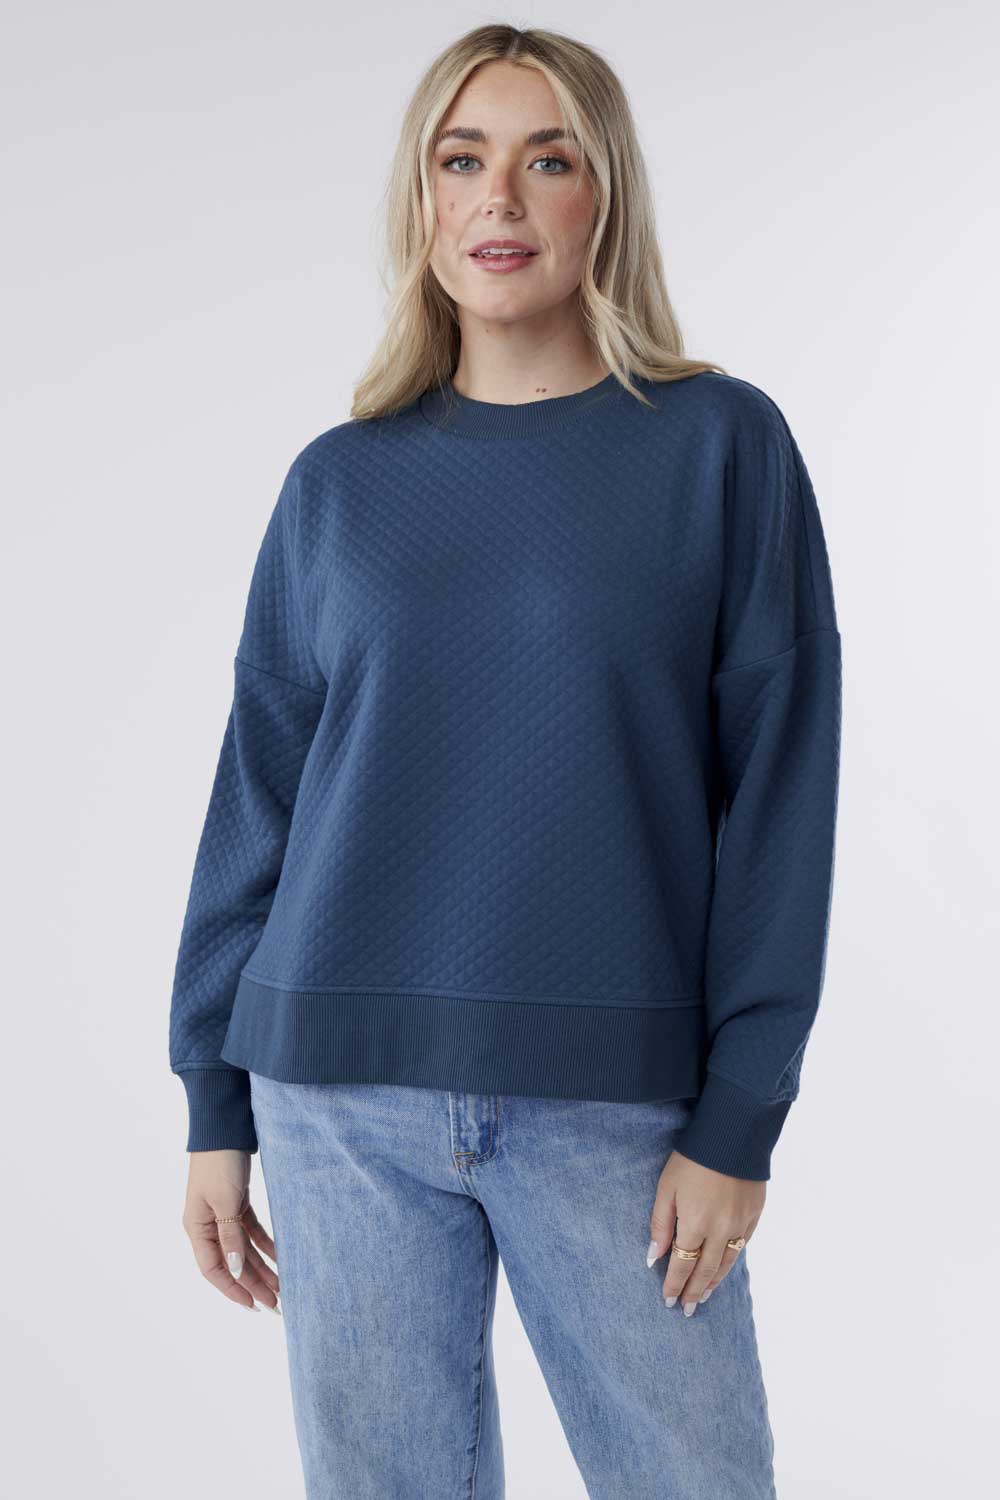 Gabriella - Top Jacquard Knit Sweatshirt